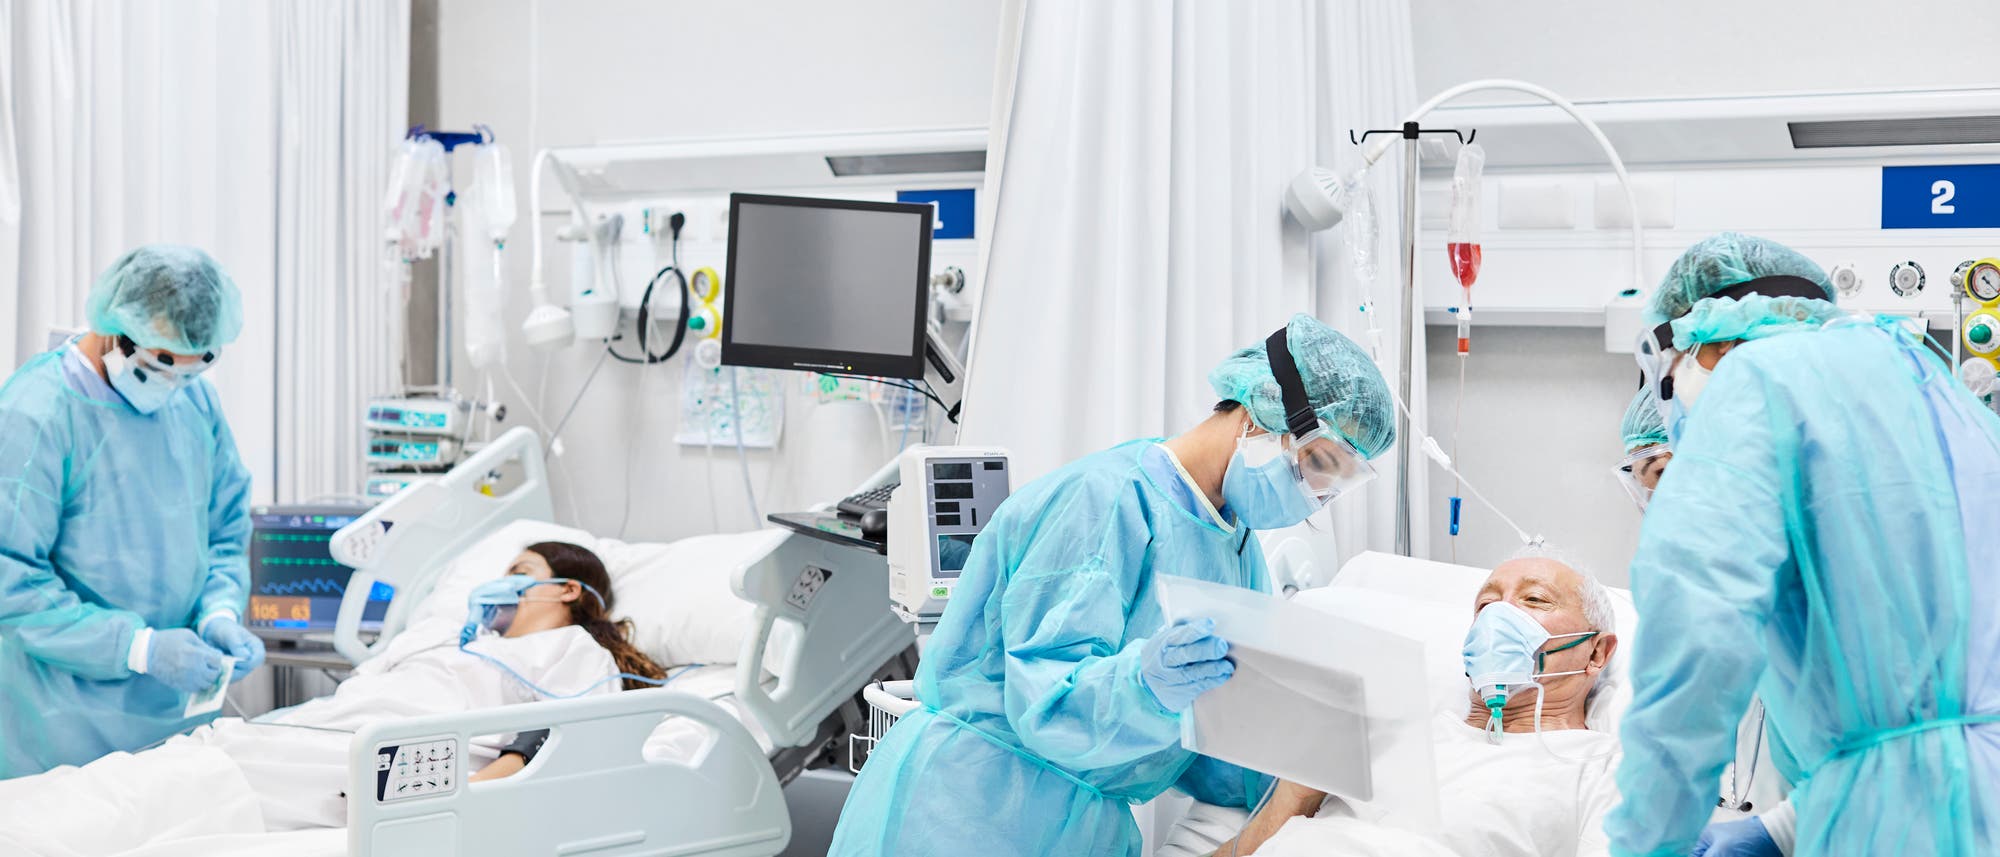 Ein älterer Patient und eine jüngere Patientin mit MNS in Intensivbetten, umgeben von Ärztinnen und Ärzten in Schutzausrüstung.